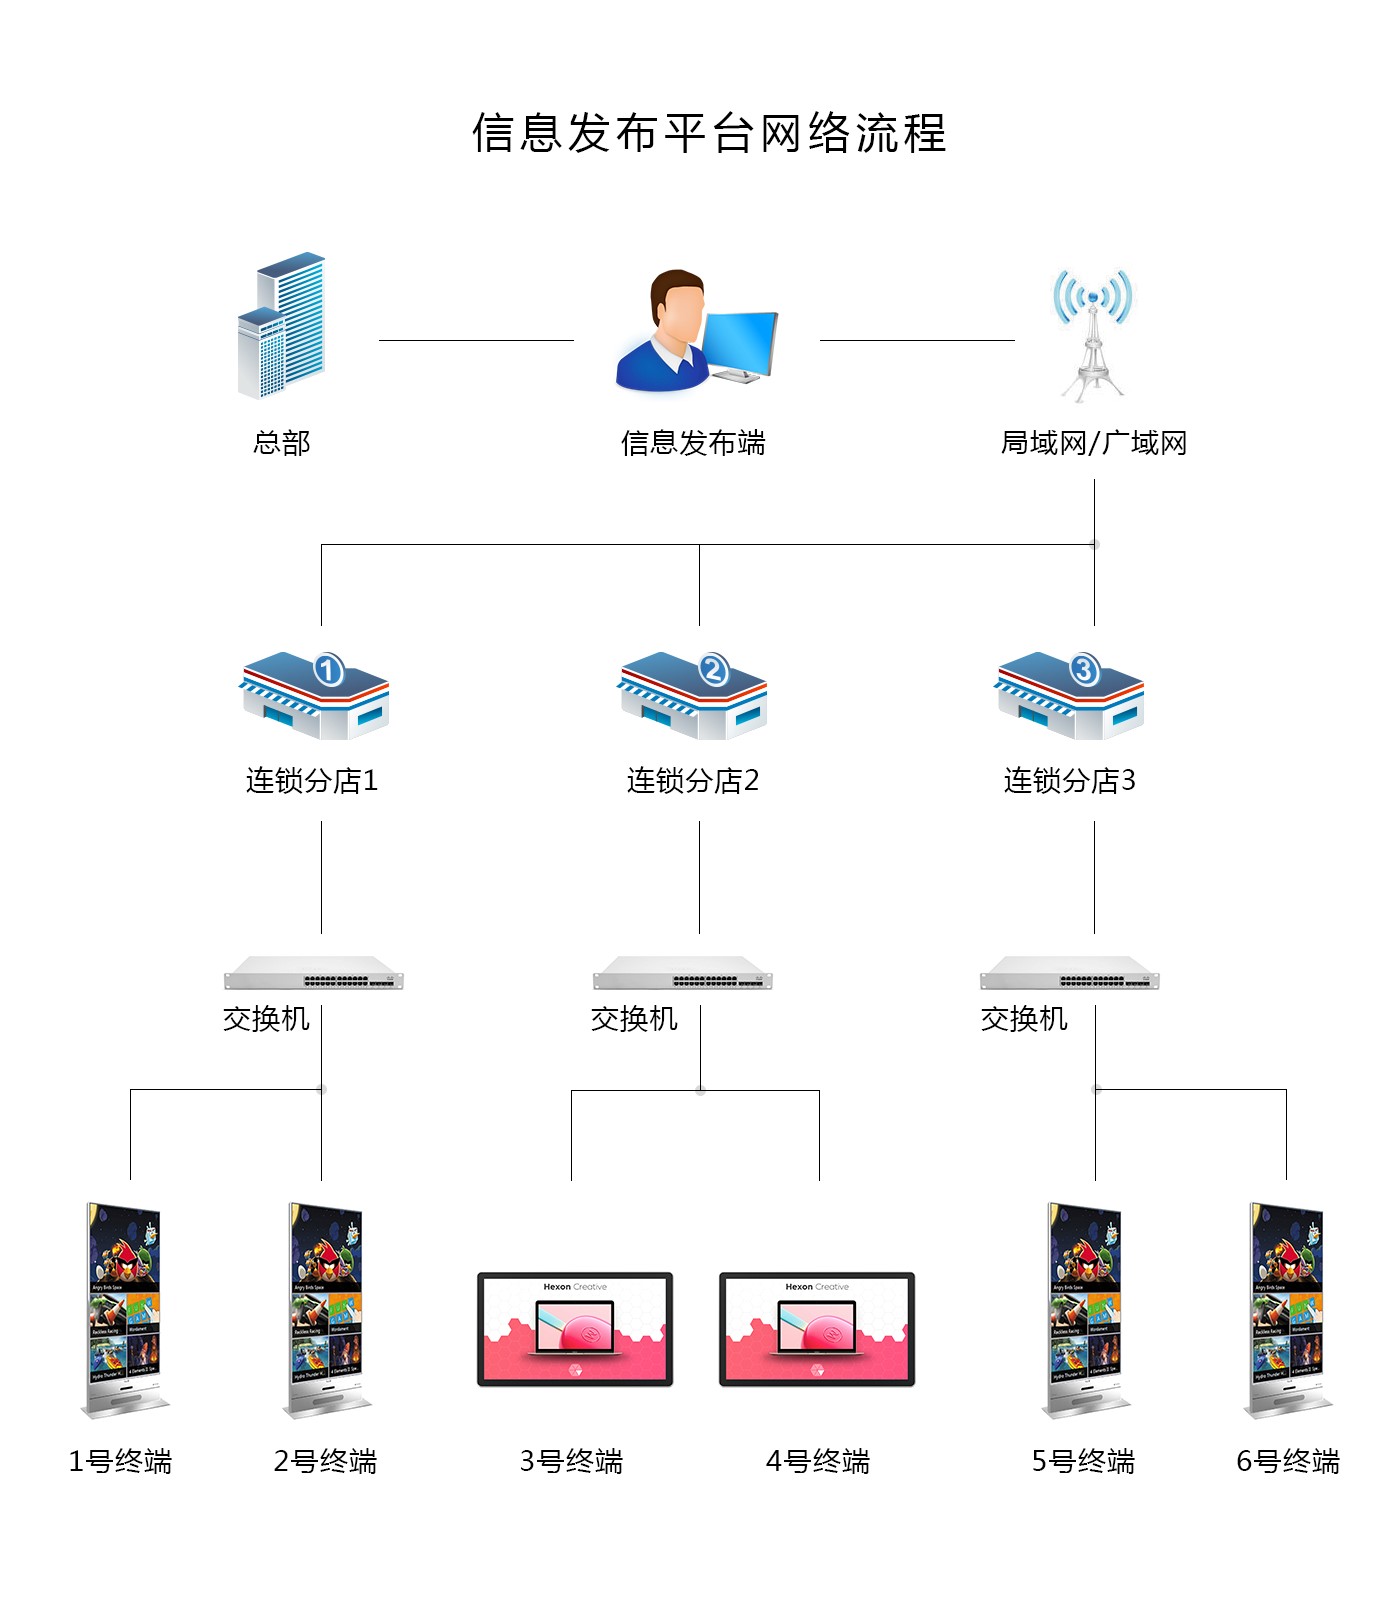 18.5寸壁挂式广告机PZ-18.5BE--广州磐众智能科技有限公司